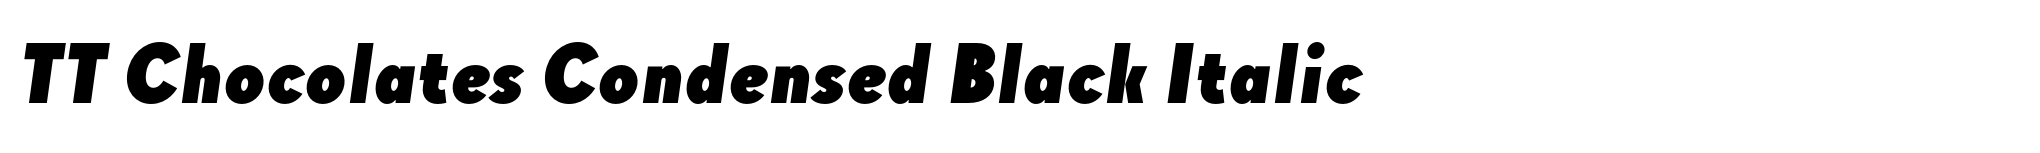 TT Chocolates Condensed Black Italic image